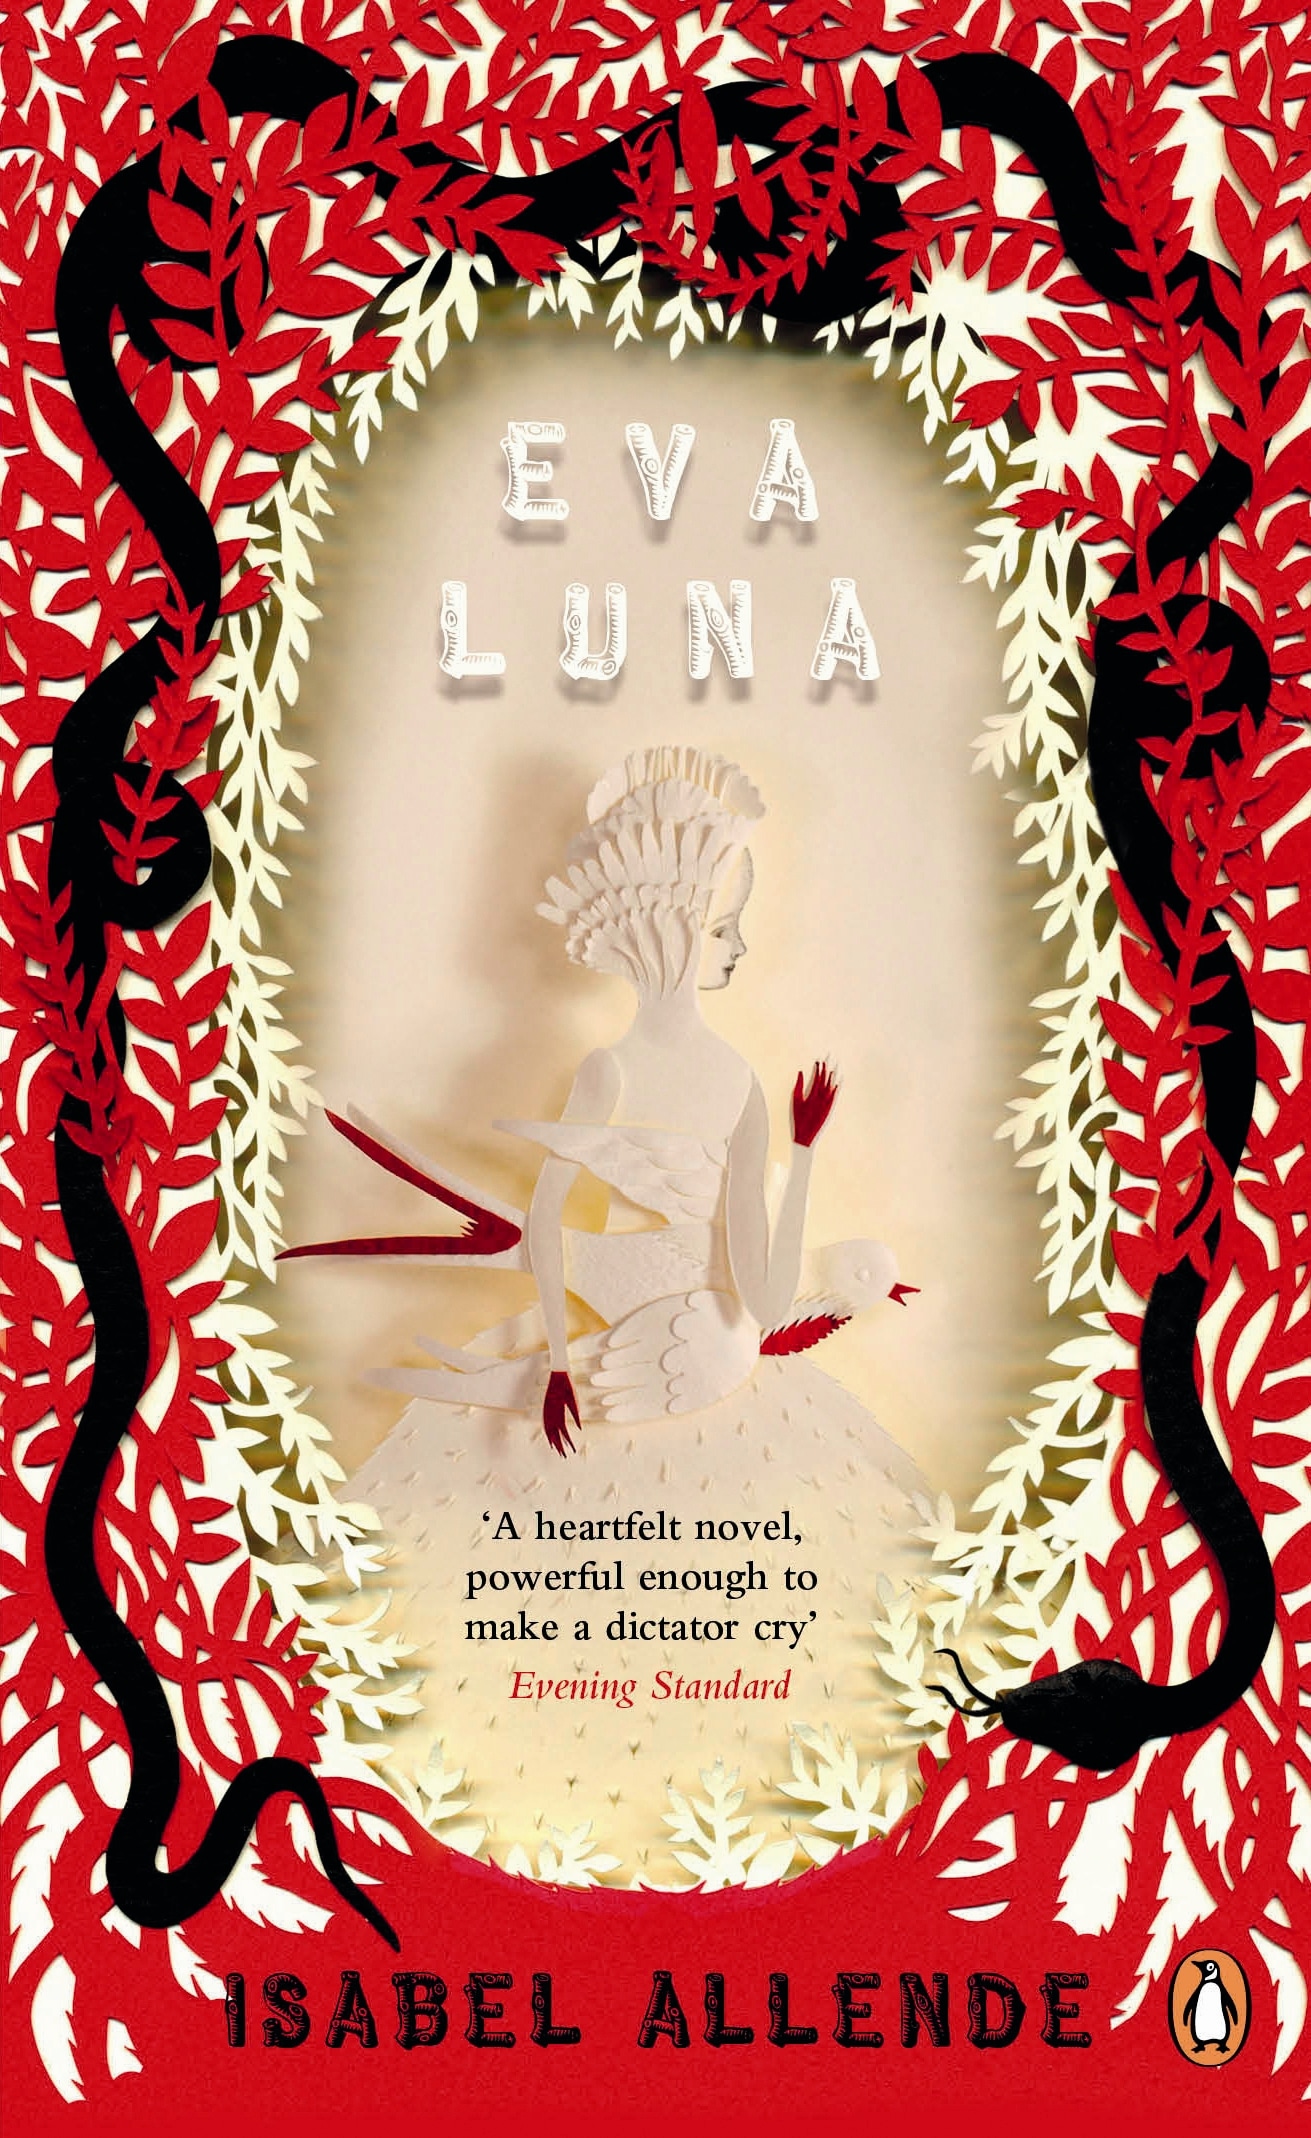 Book “Eva Luna” by Isabel Allende — April 7, 2011